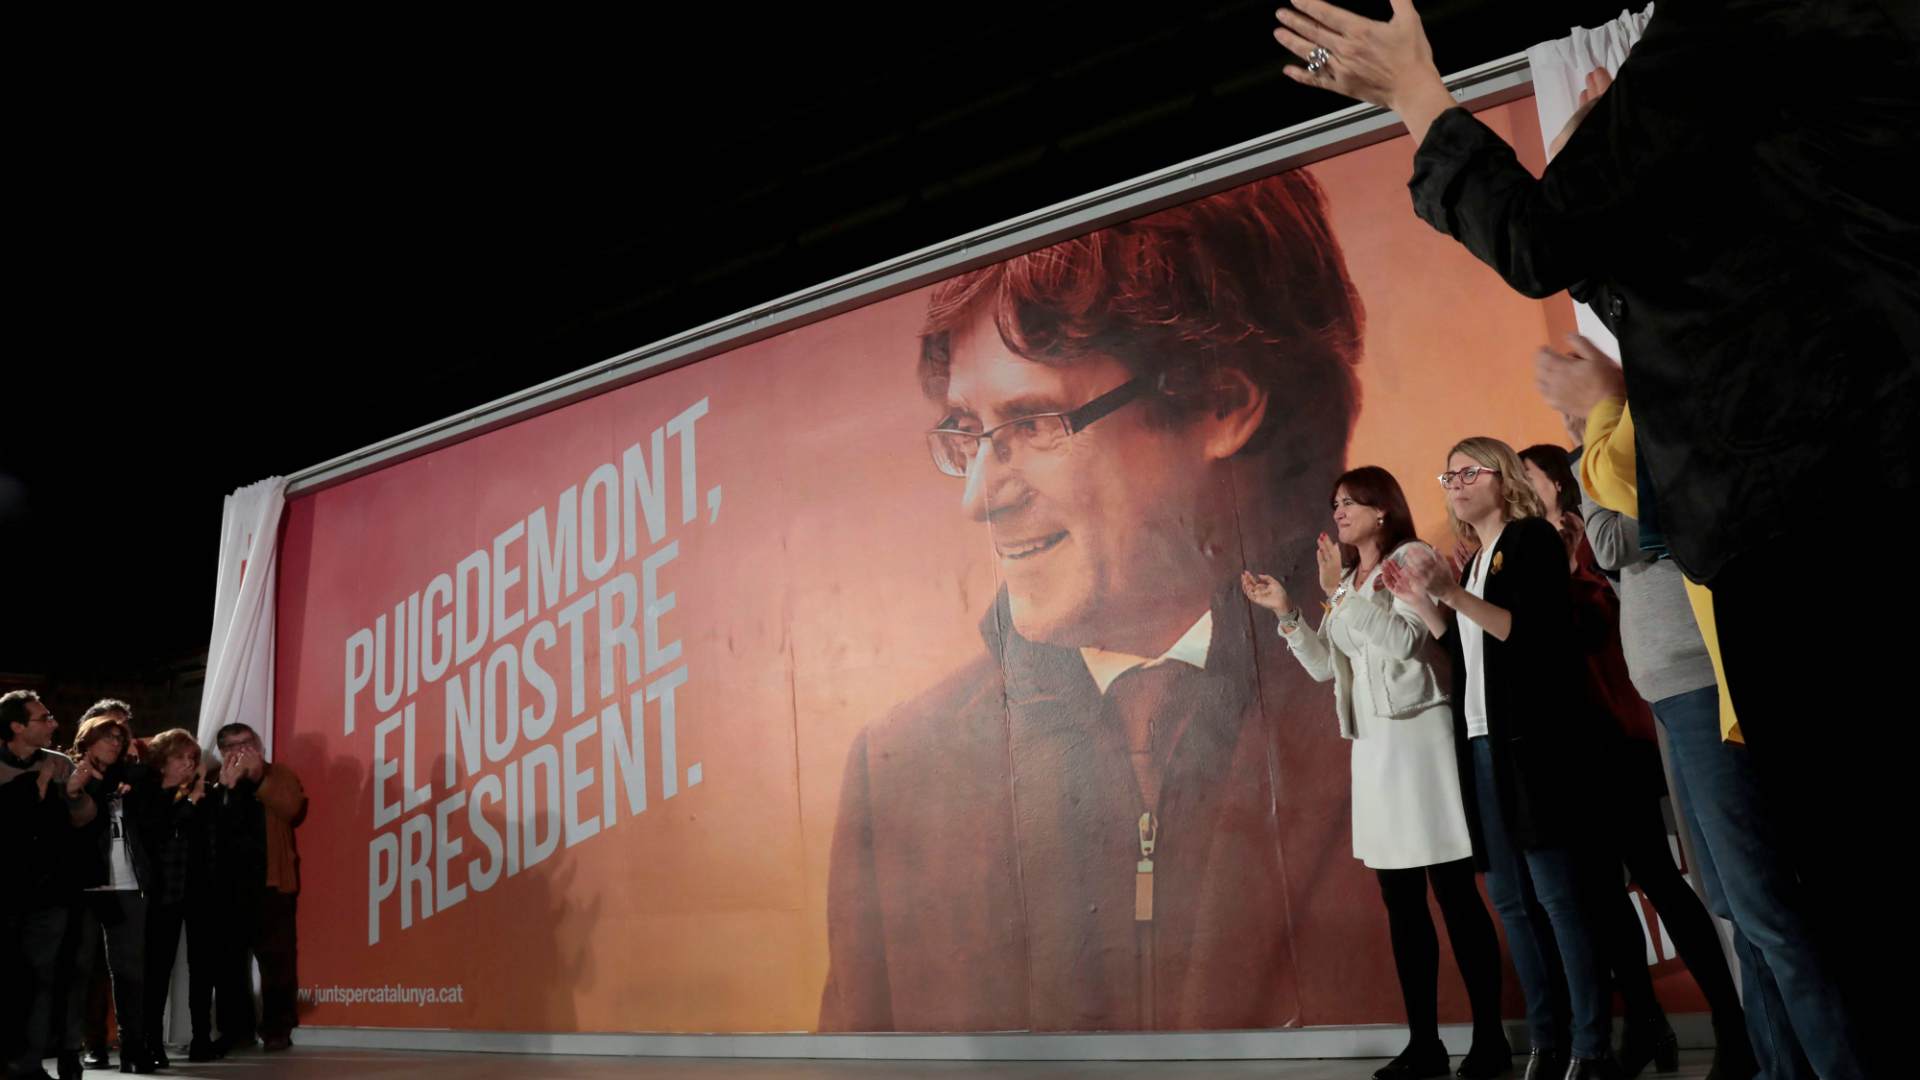 Arranca la campaña electoral catalana con la ‘ausencia’ de los candidatos soberanistas